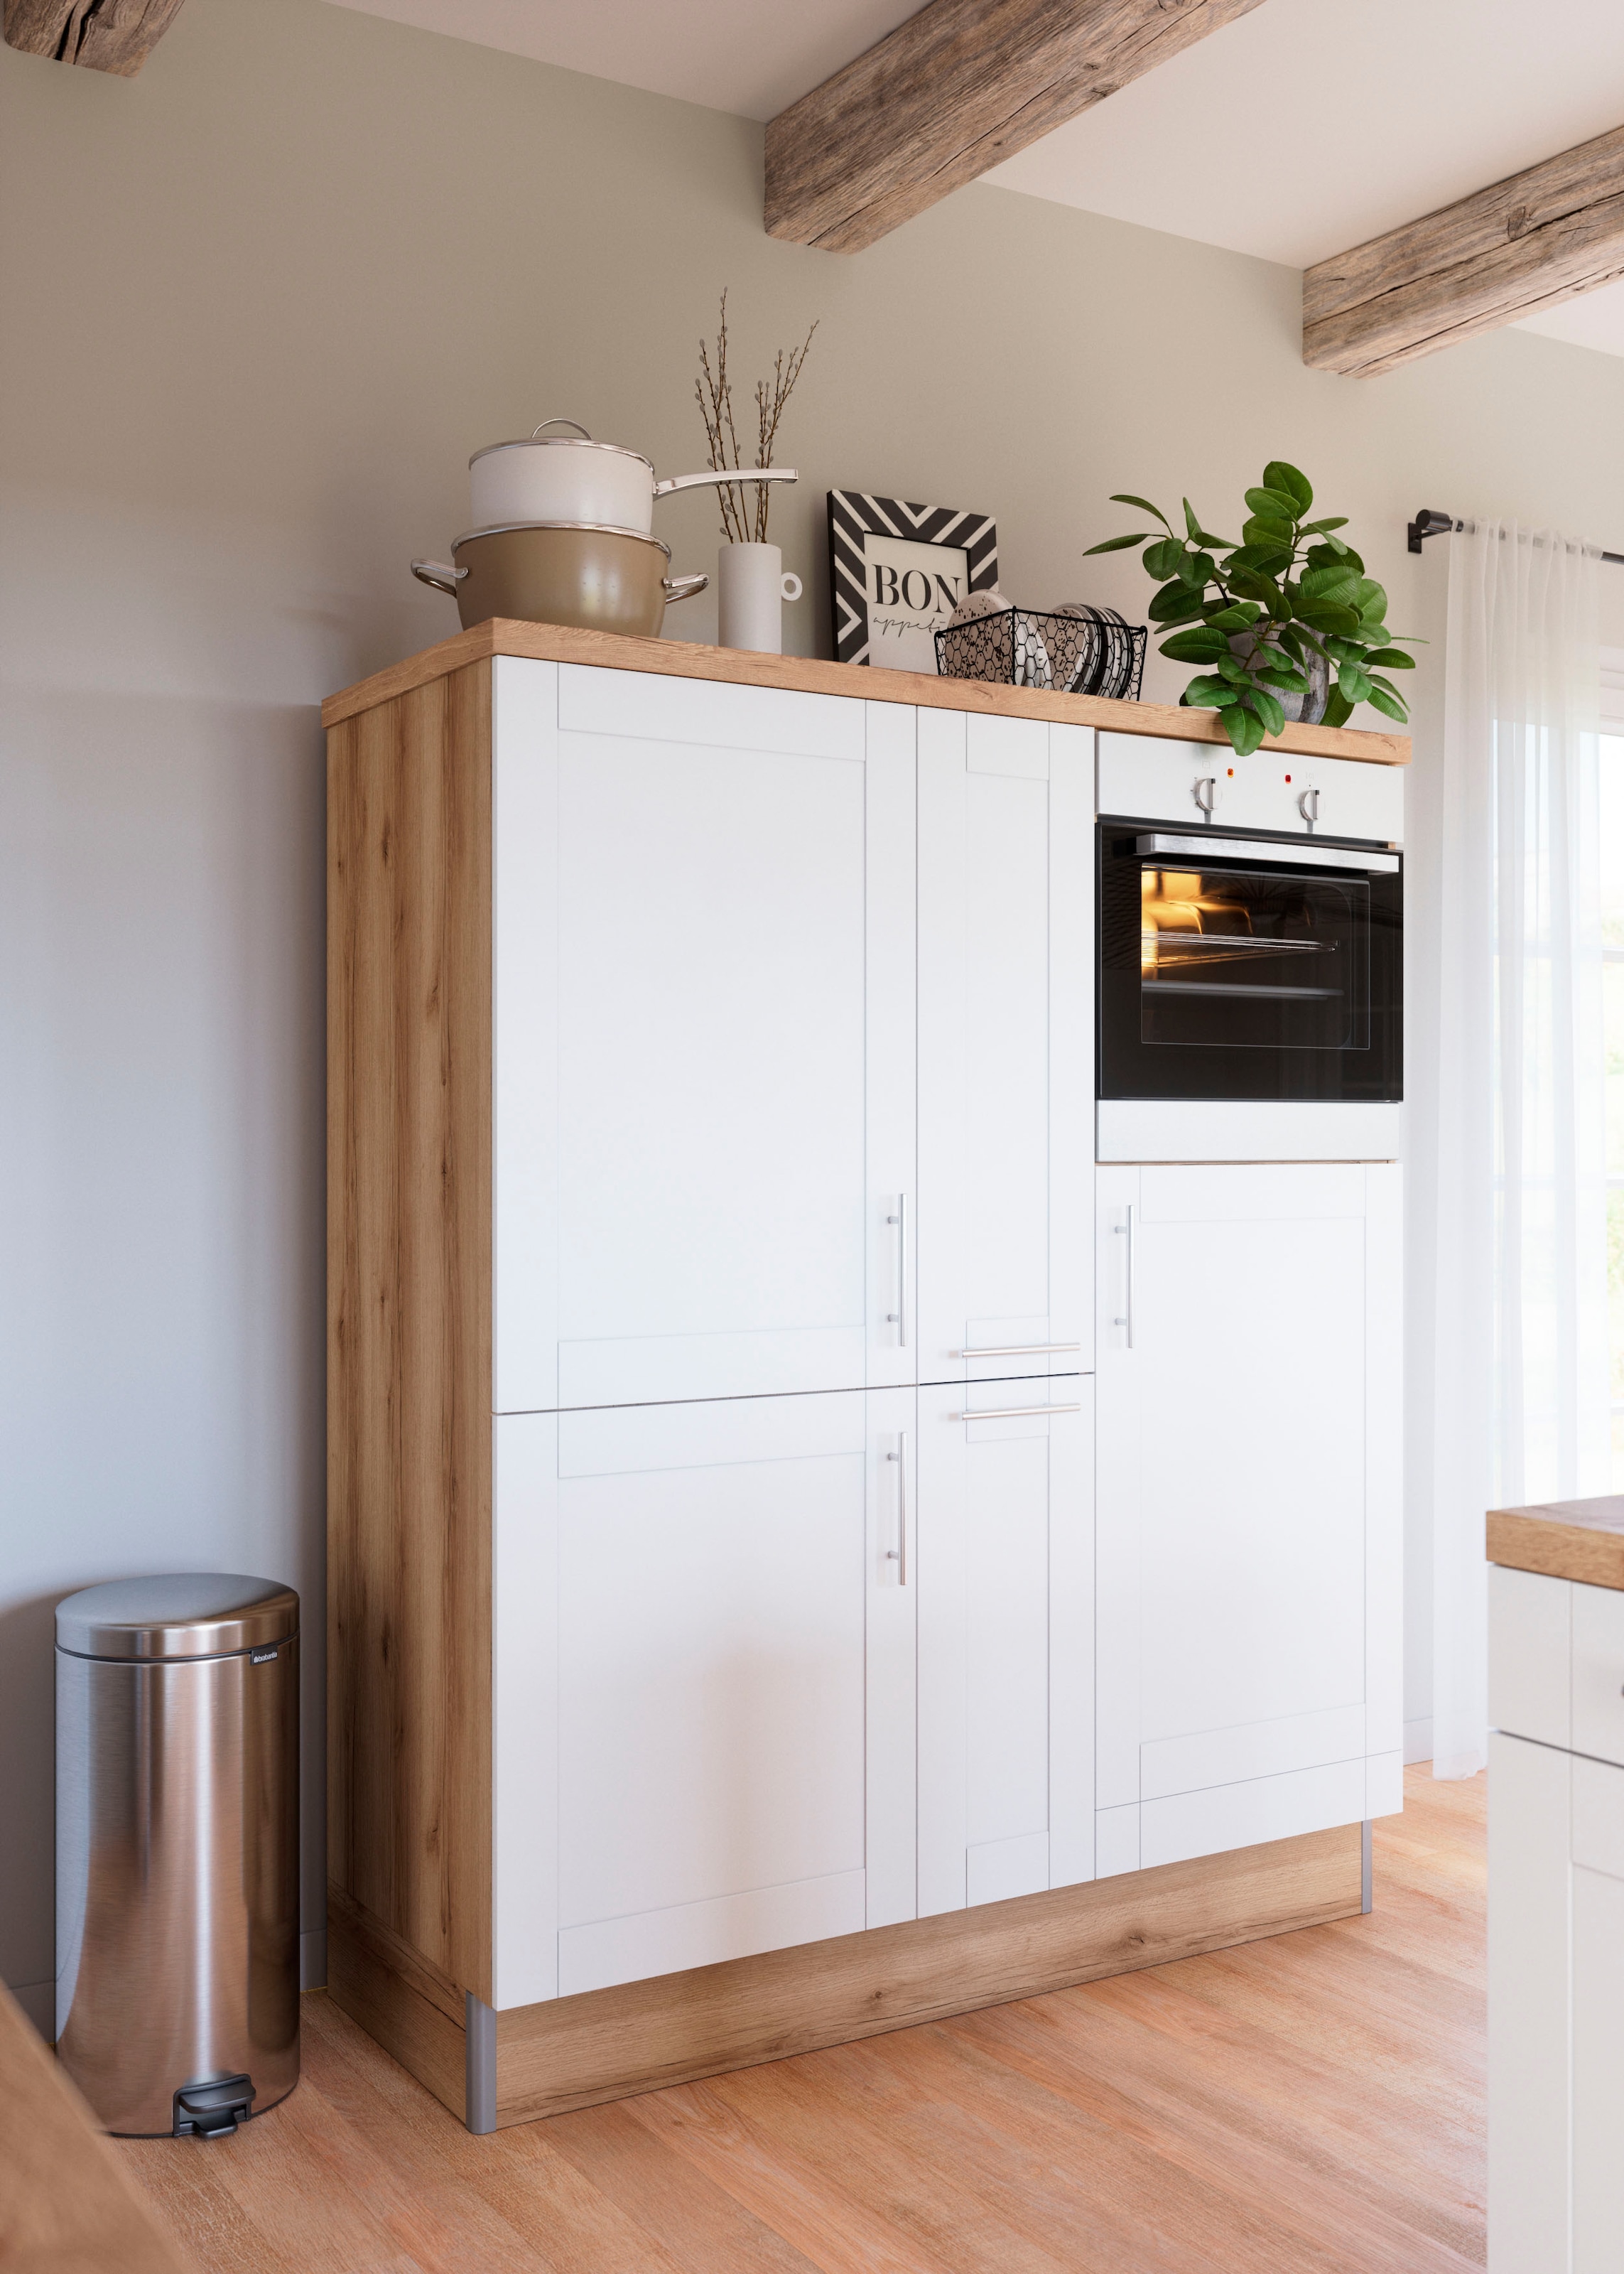 OPTIFIT Küche »Ahus«, 150 cm breit, ohne E-Geräte, Soft Close Funktion